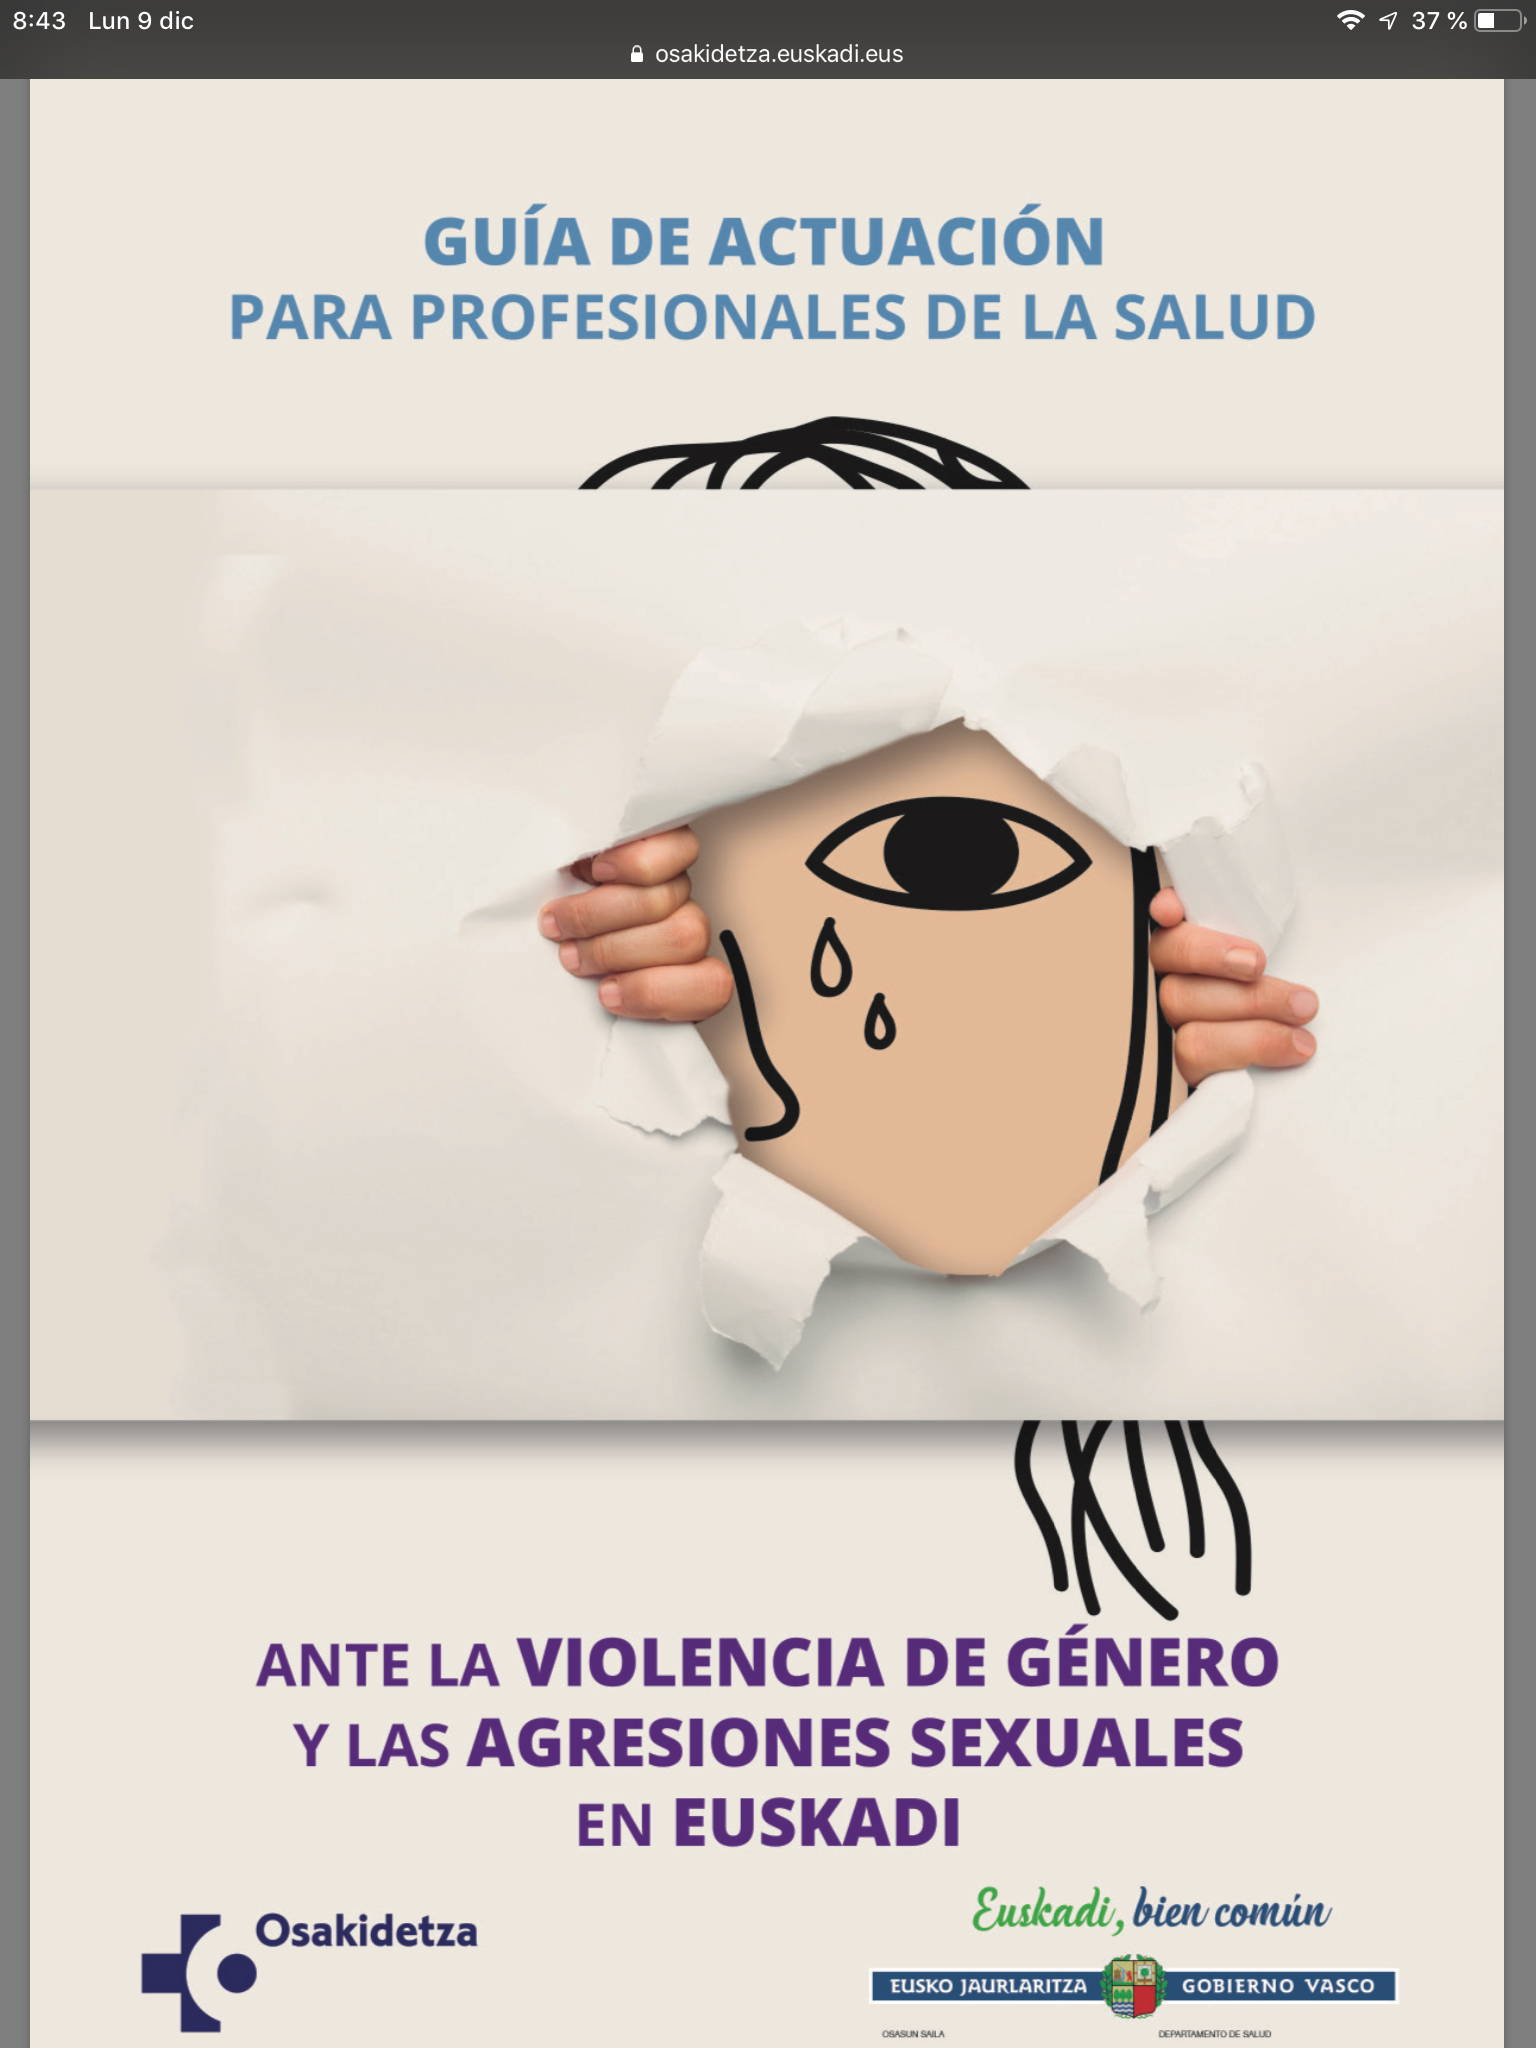 OSAKIDETZA: Guia de actuación para profesionales de la salud ante la violencia de género.